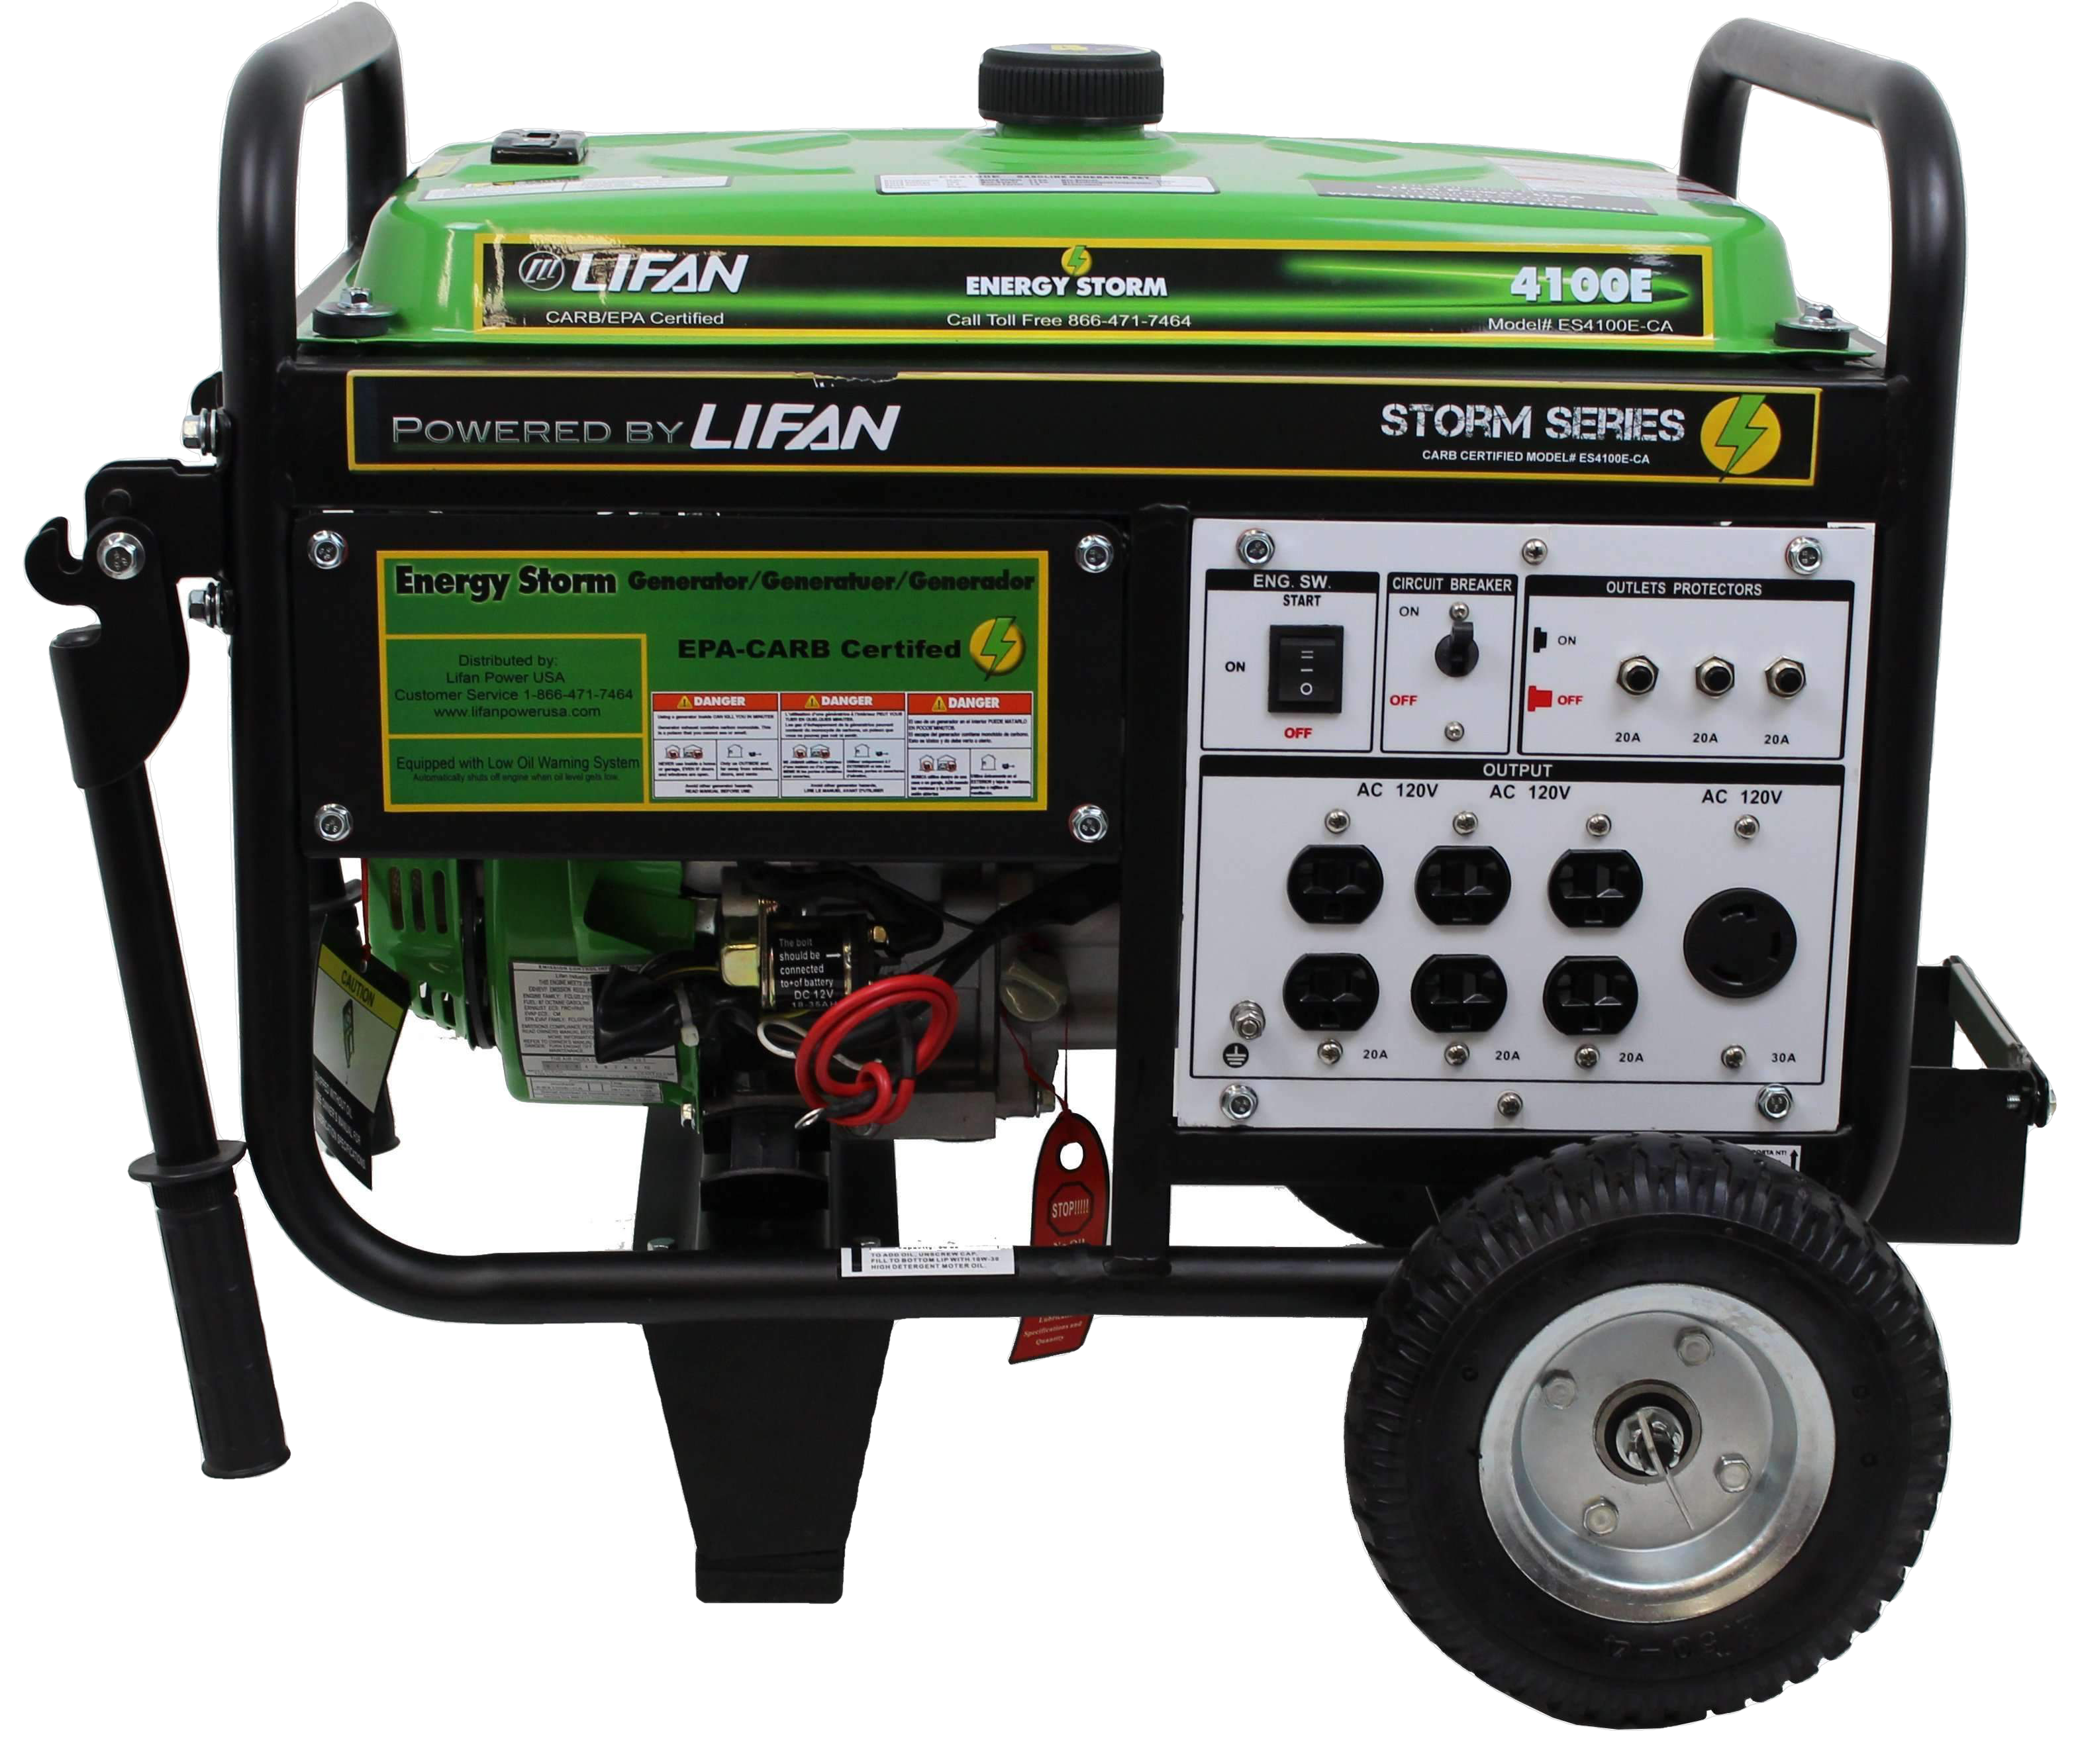 Lifan, Lifan ES4100E Energy Storm 3500W/4100W Electric Start Generator Open Box (Unused)